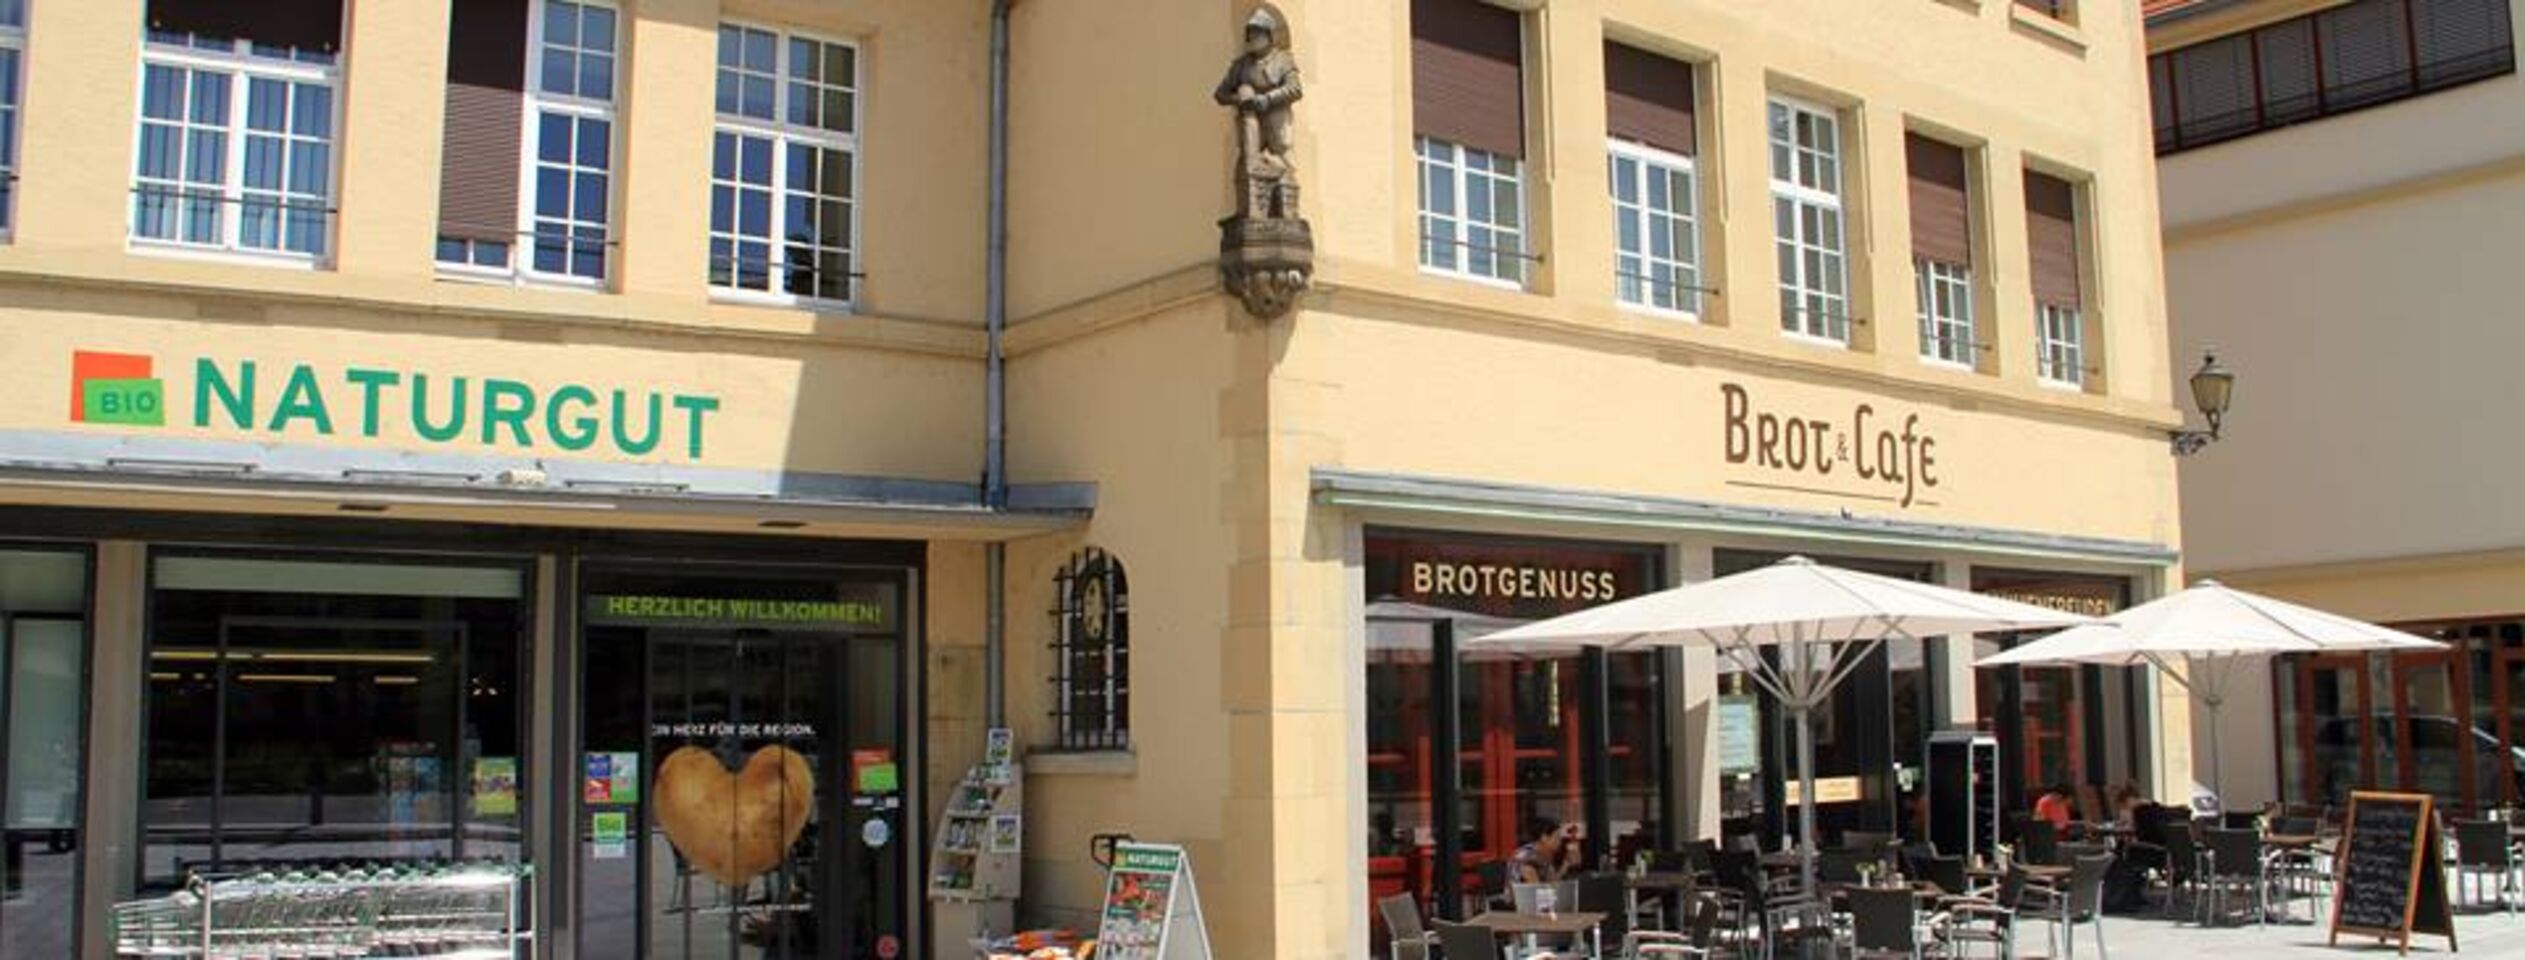 A photo of Brot & Café